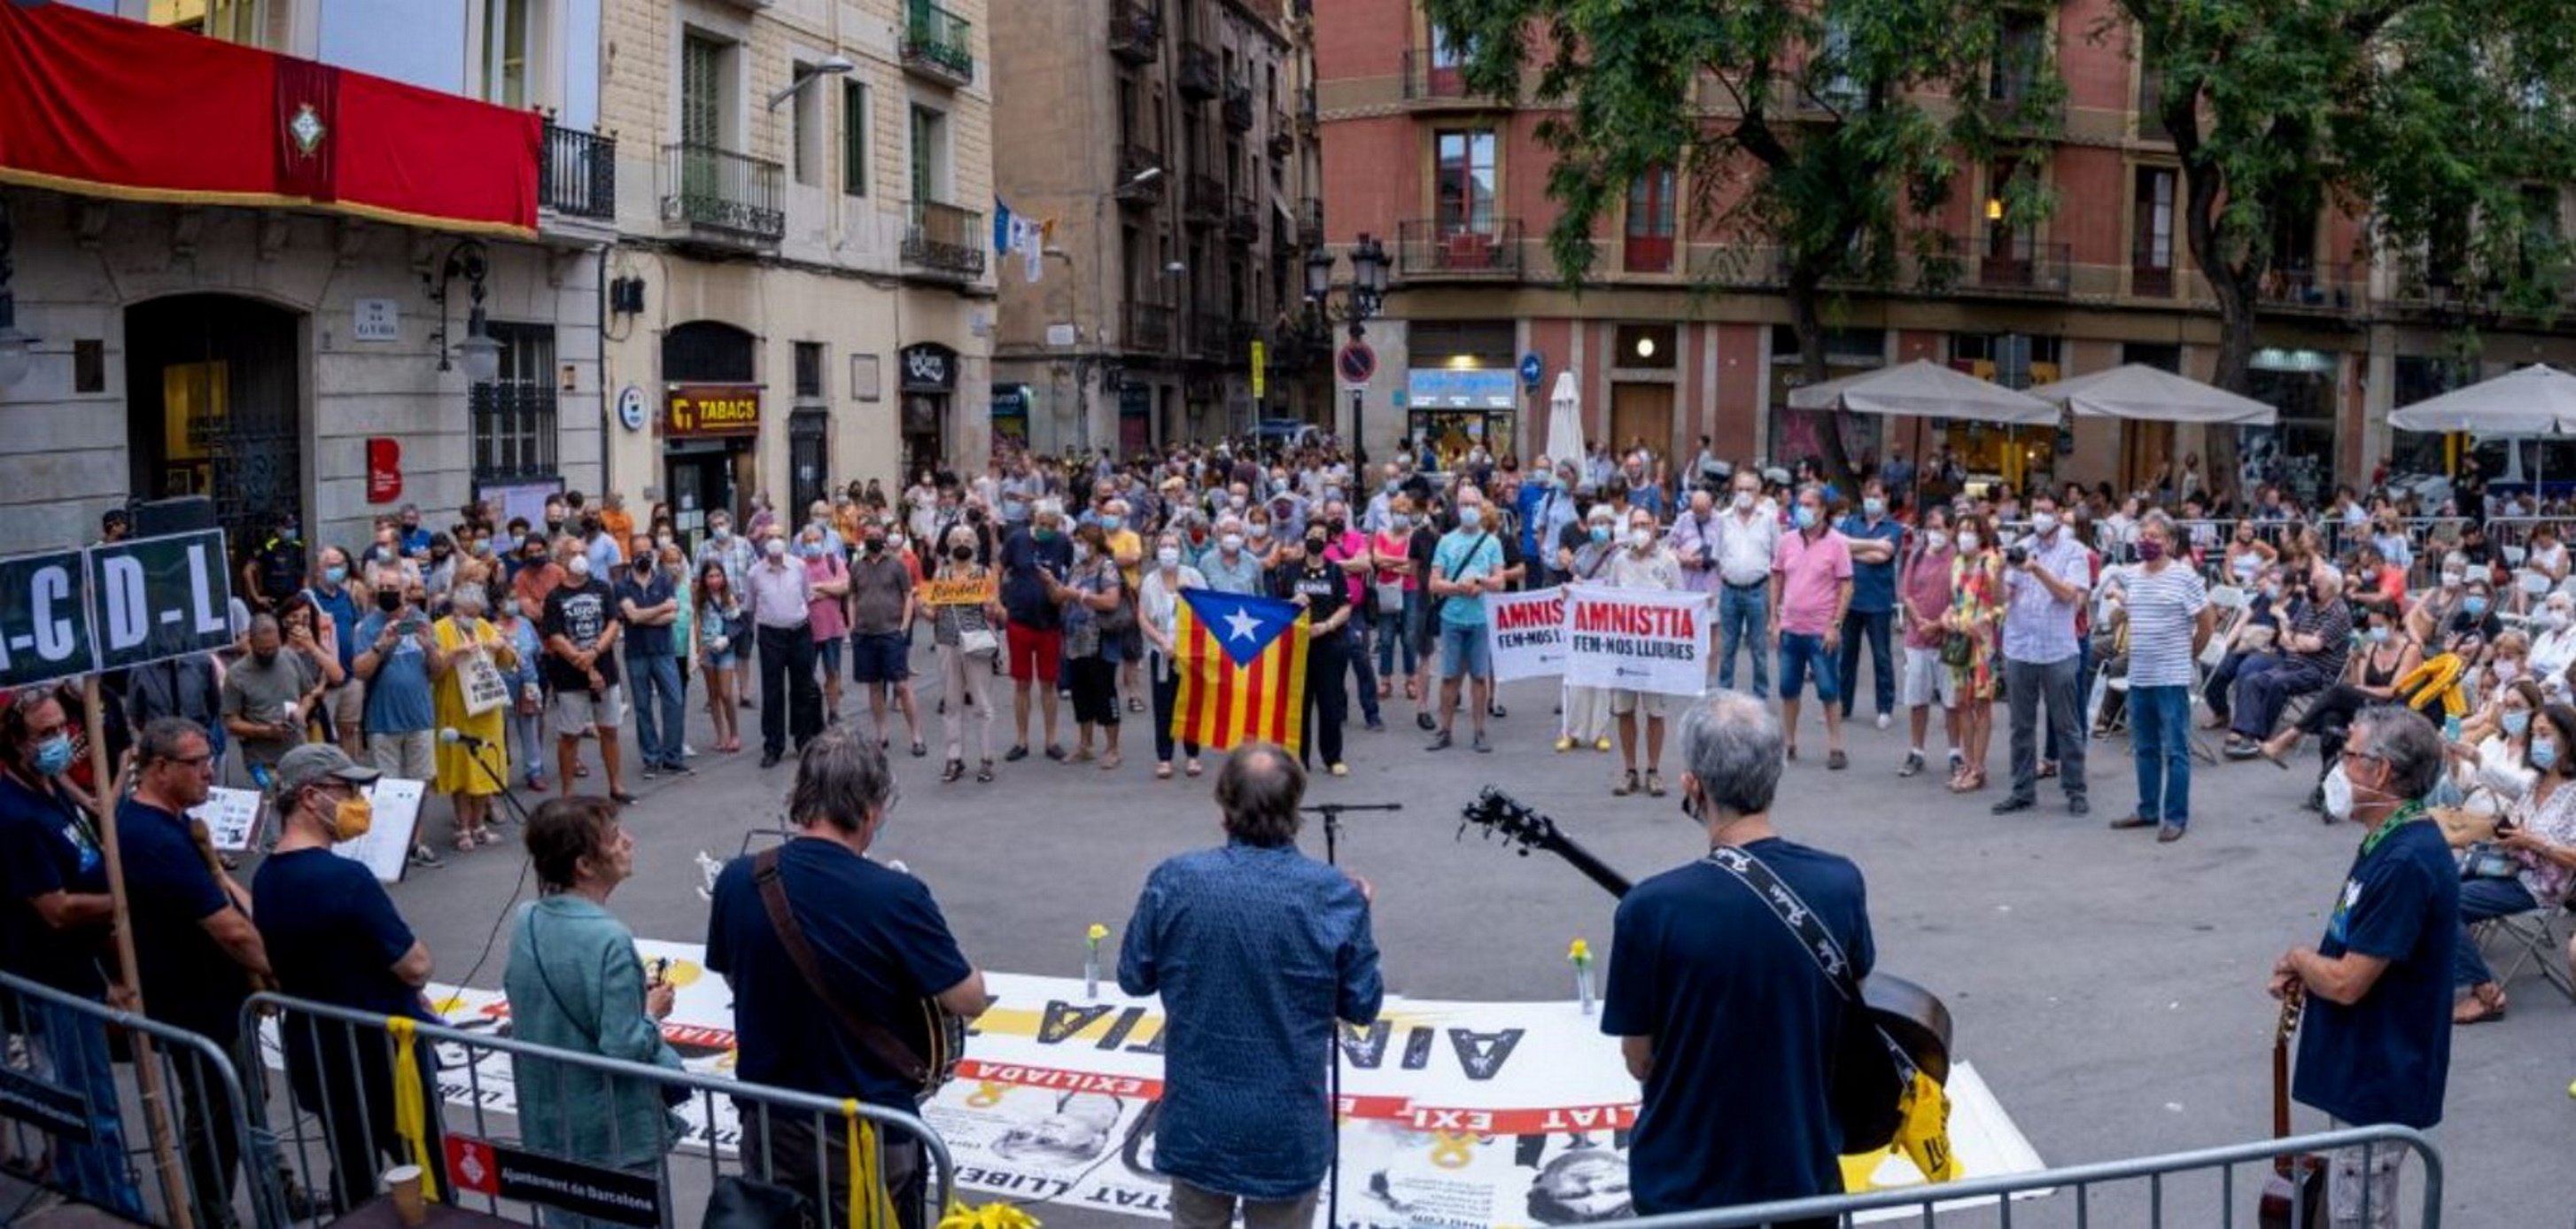 Segueixen les crítiques a Colau a Gràcia: "Cadascú recull el que sembra"